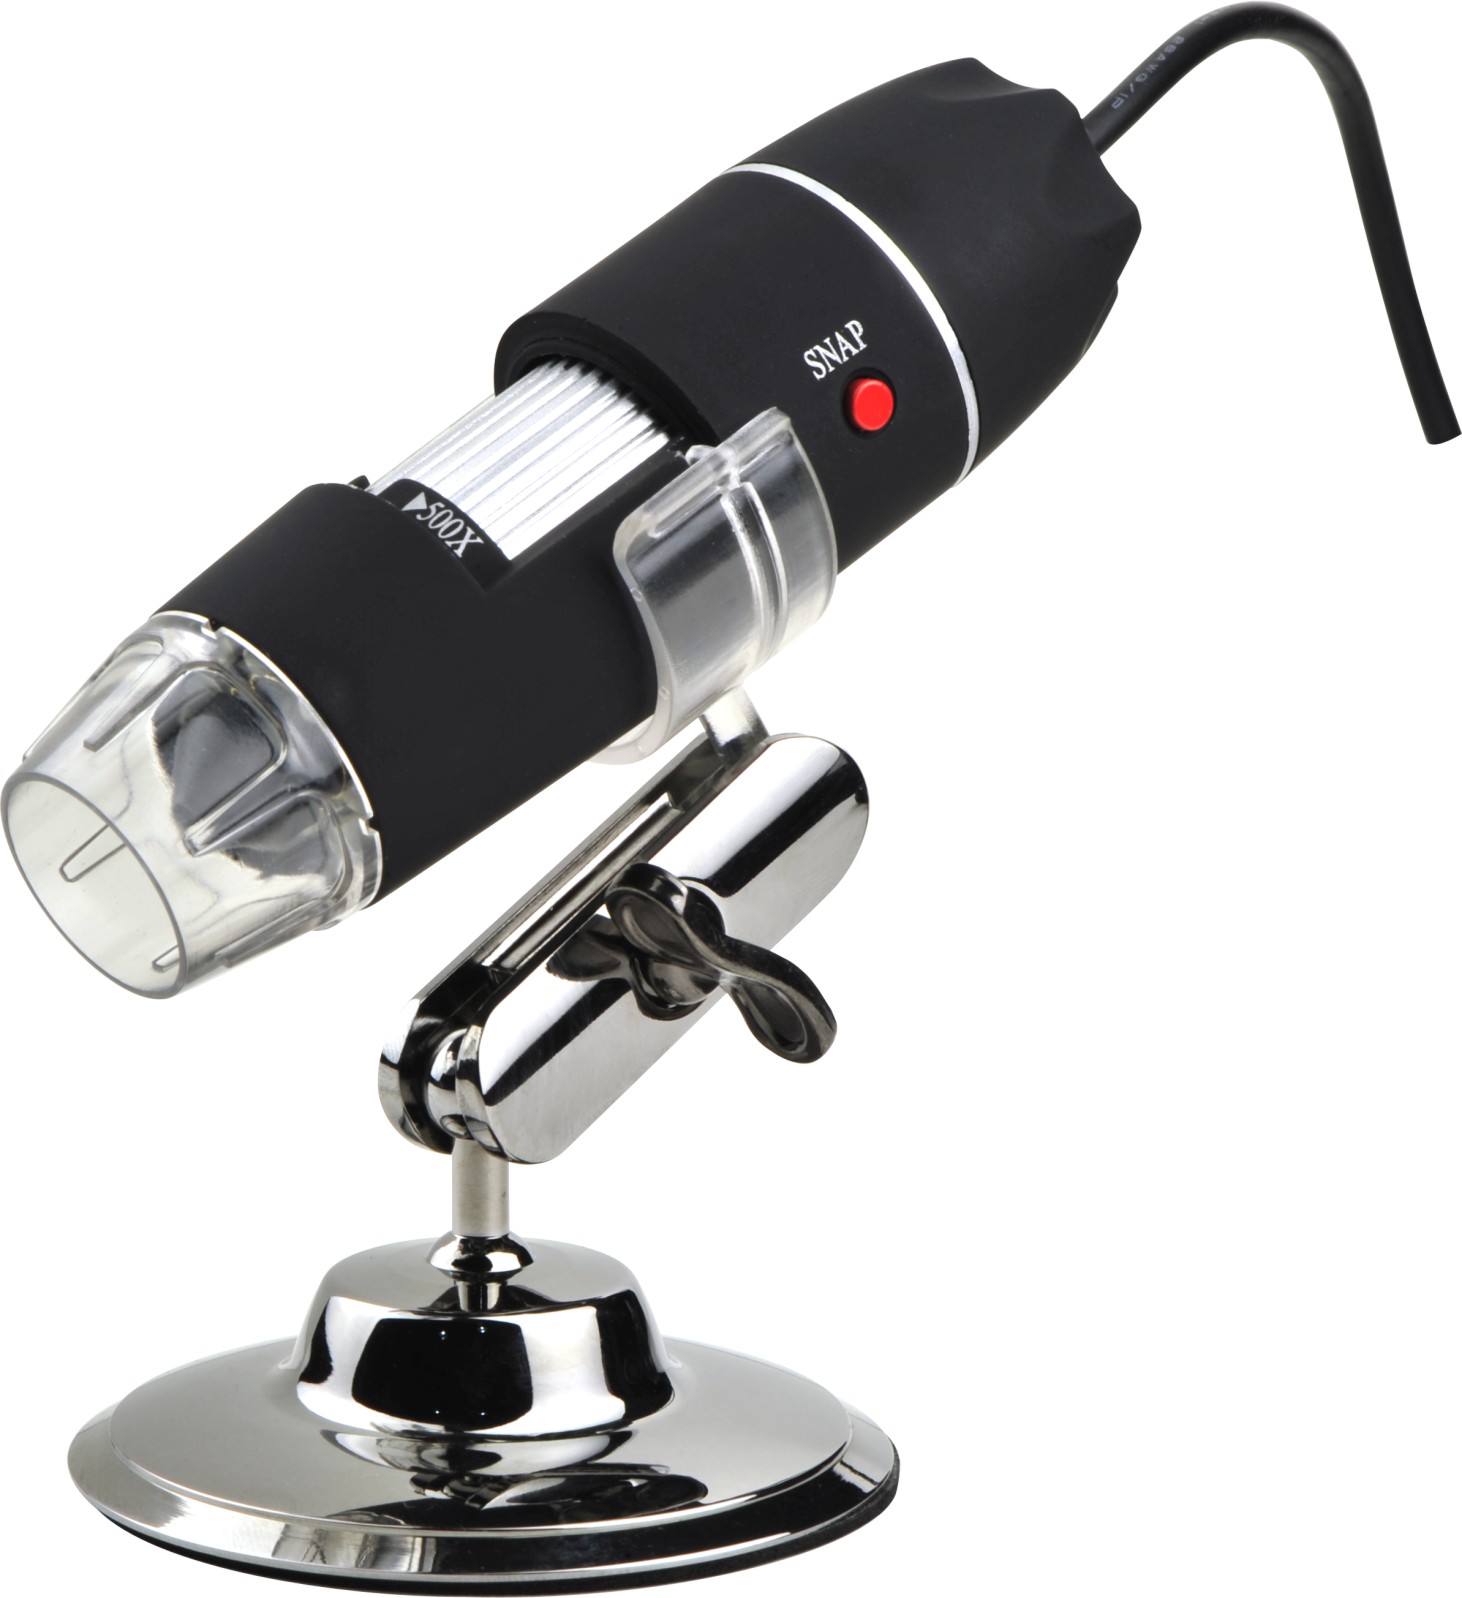 DMU-200X USBデジタル顕微鏡、顕微鏡カメラ